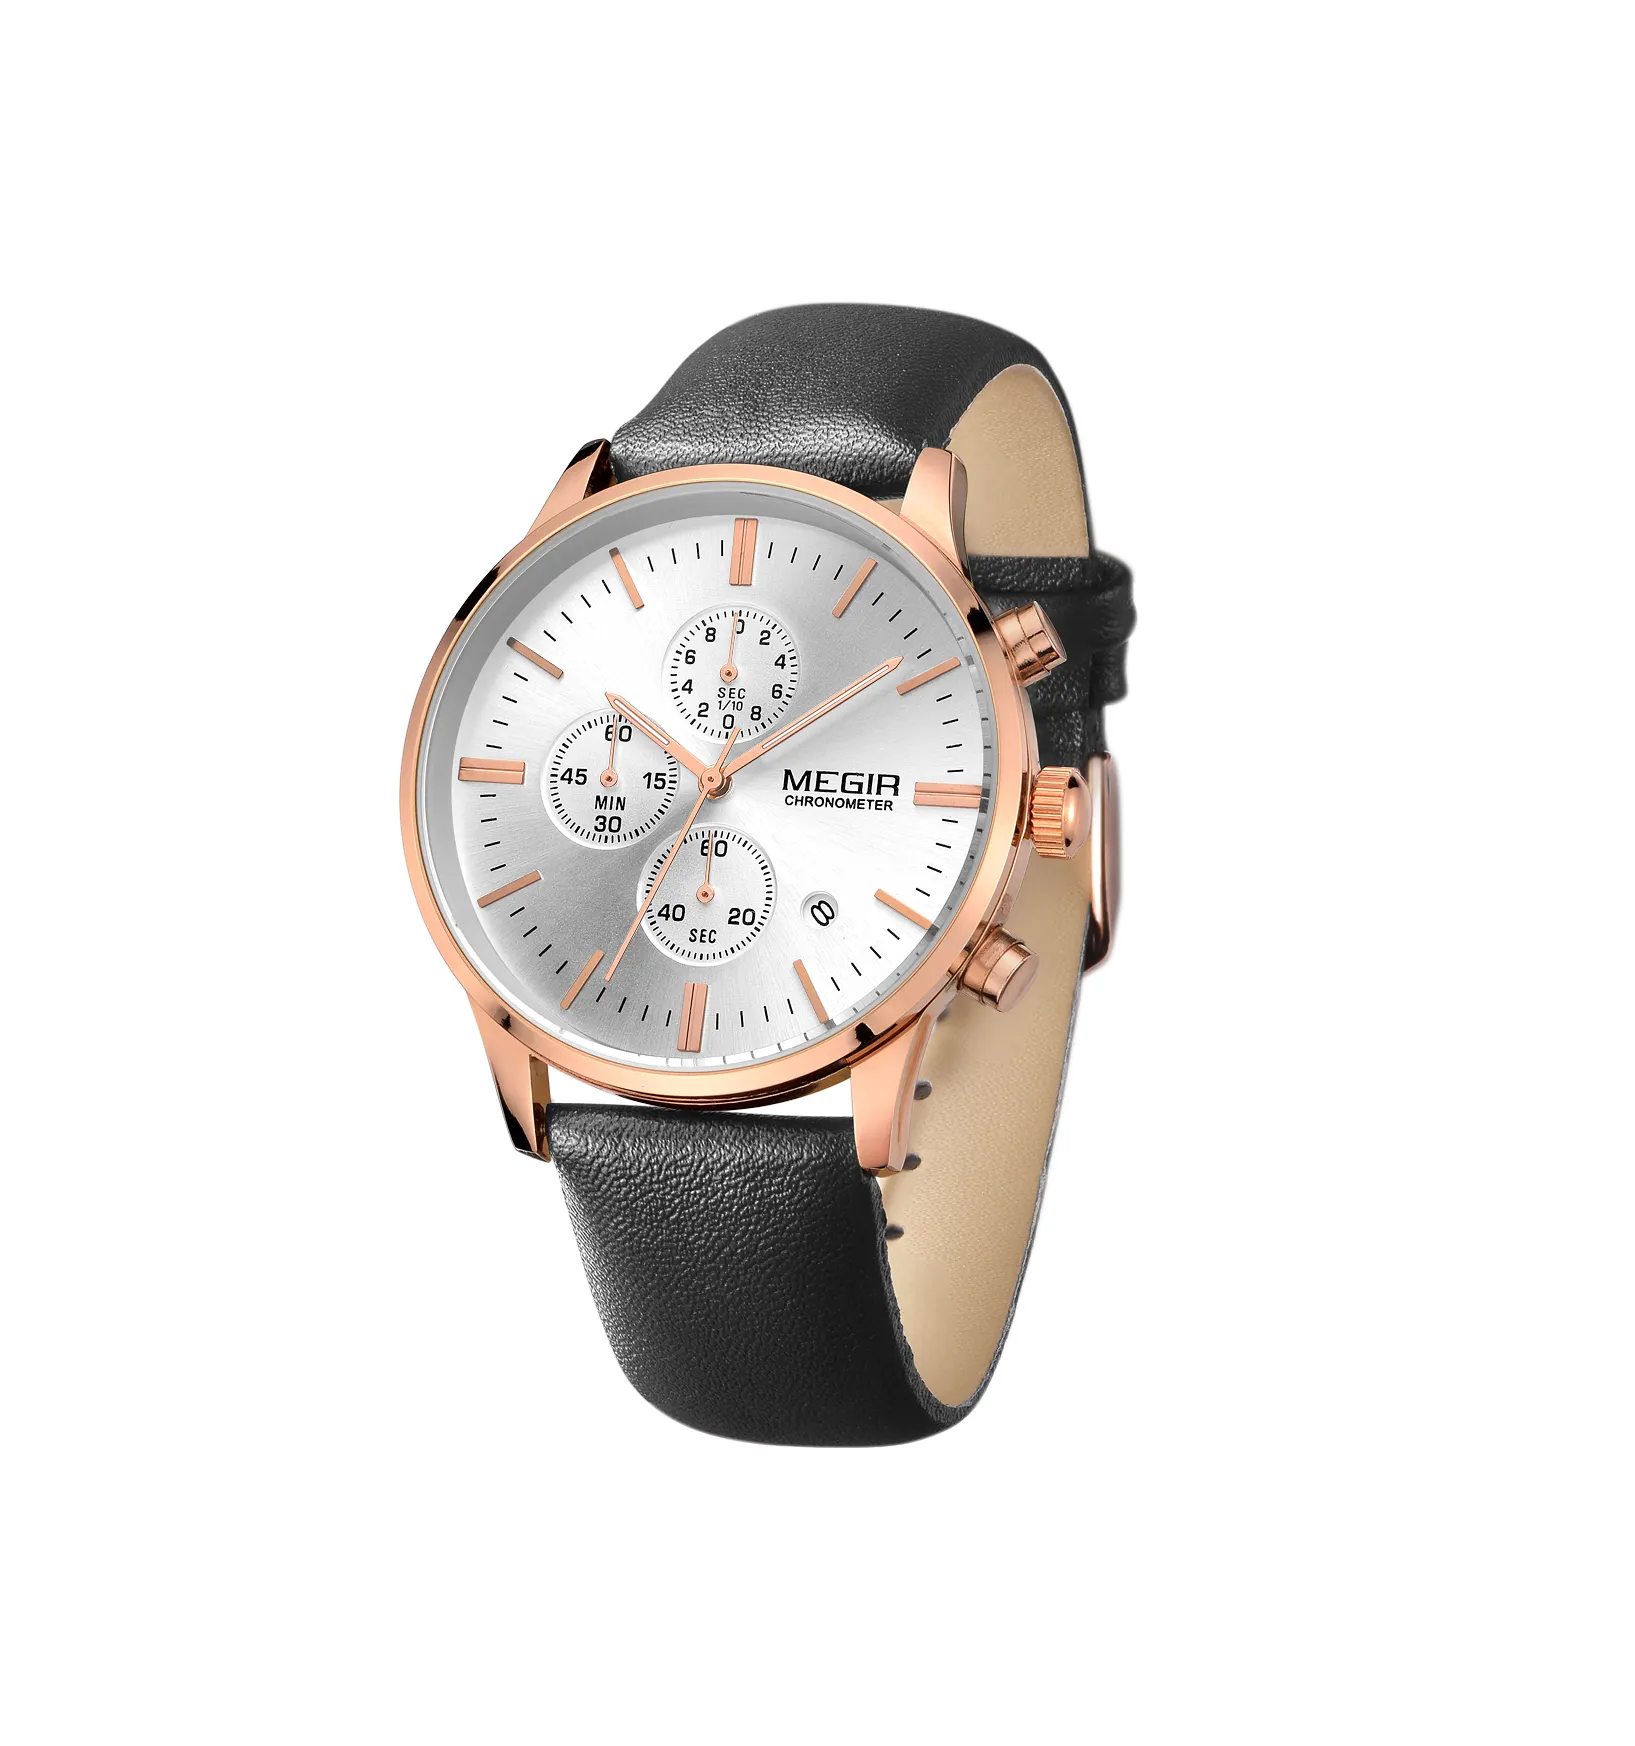 Nouveau MEGIR 2011 luxe or Rose montres pour hommes en cuir affaires montres montre à Quartz pour hommes horloge LOGO personnalisé usine